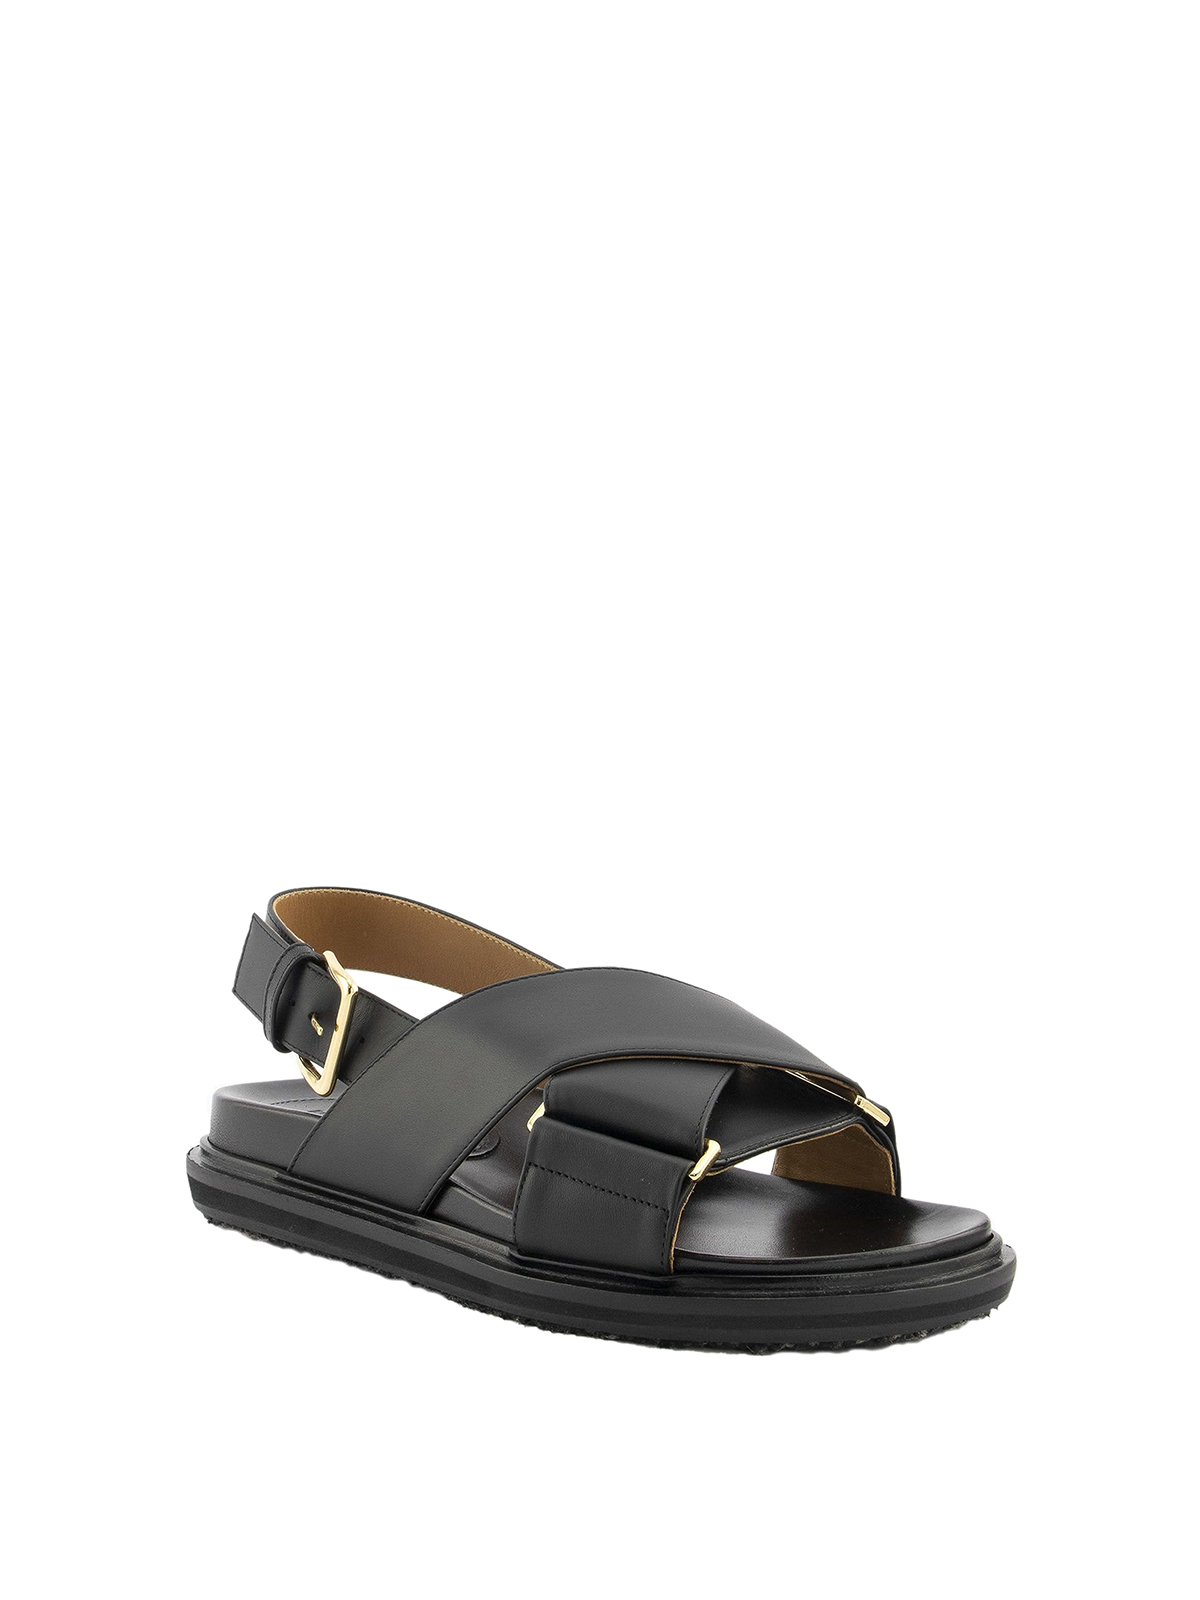 Marni leather sandals Fussbett Shoe women's black color | buy on PRM